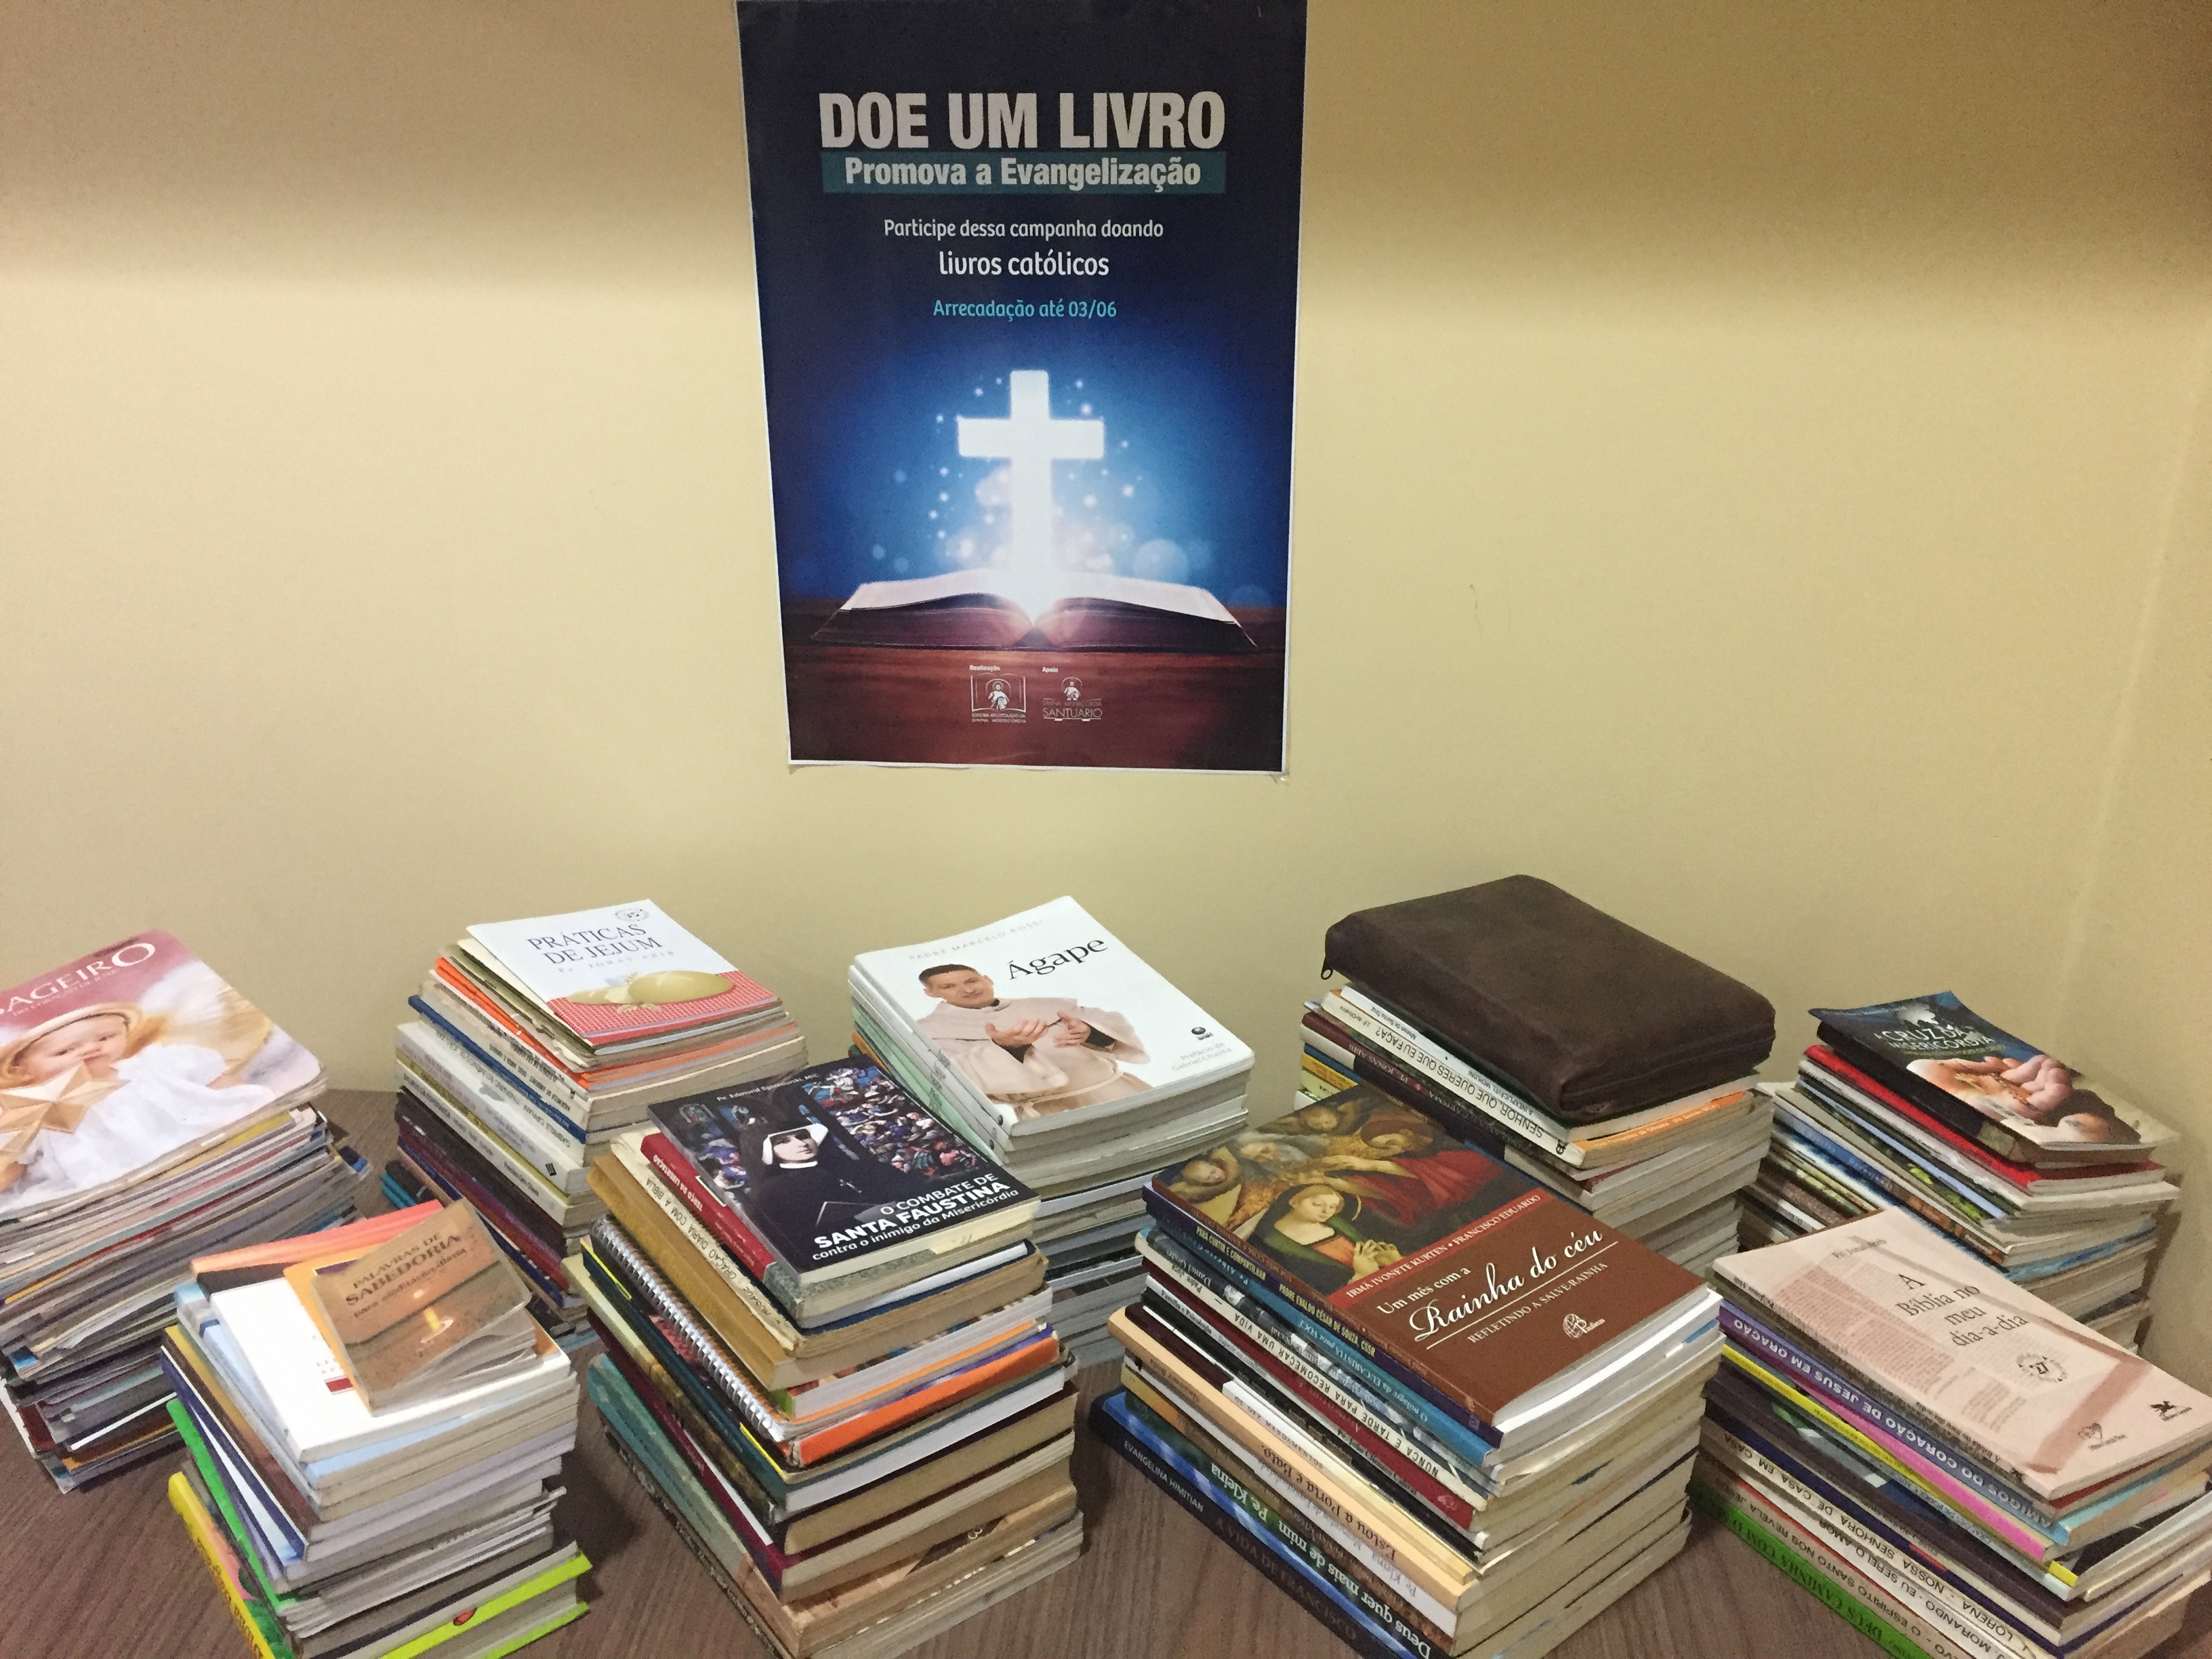 Mais de 200 livros são arrecadados na campanha de evangelização da Editora Apostolado da Divina Misericórdia